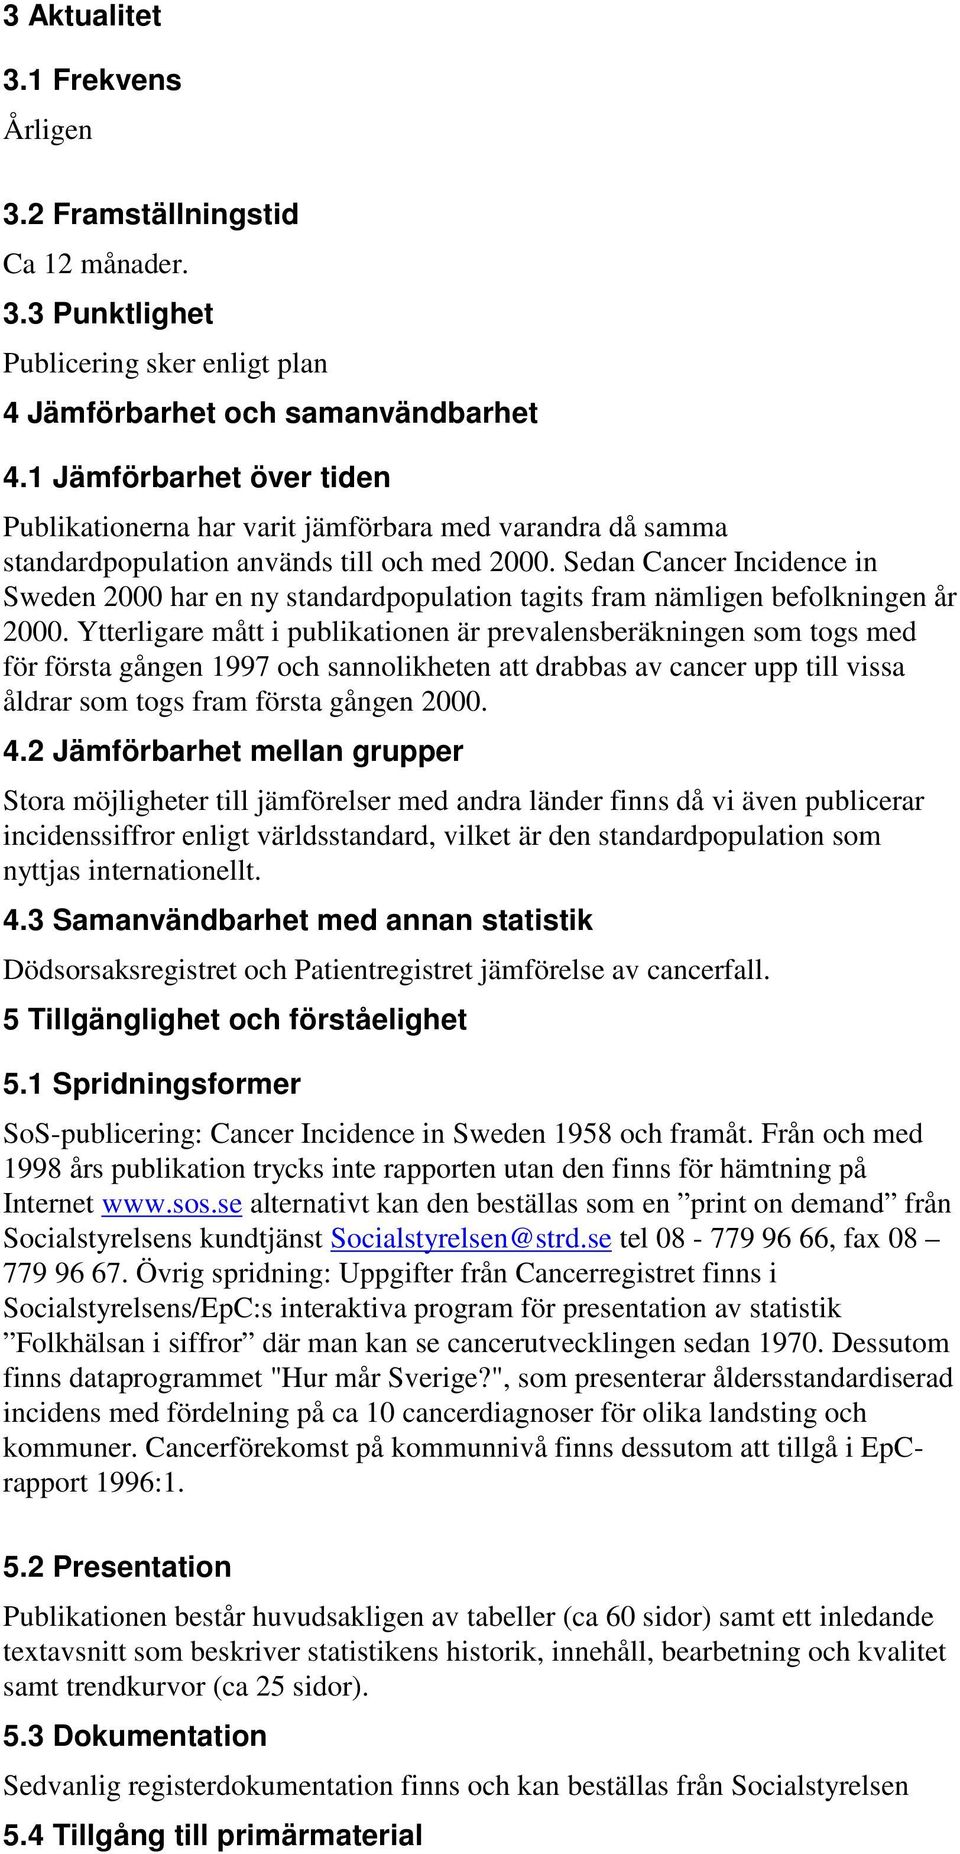 Sedan Cancer Incidence in Sweden 2000 har en ny standardpopulation tagits fram nämligen befolkningen år 2000.